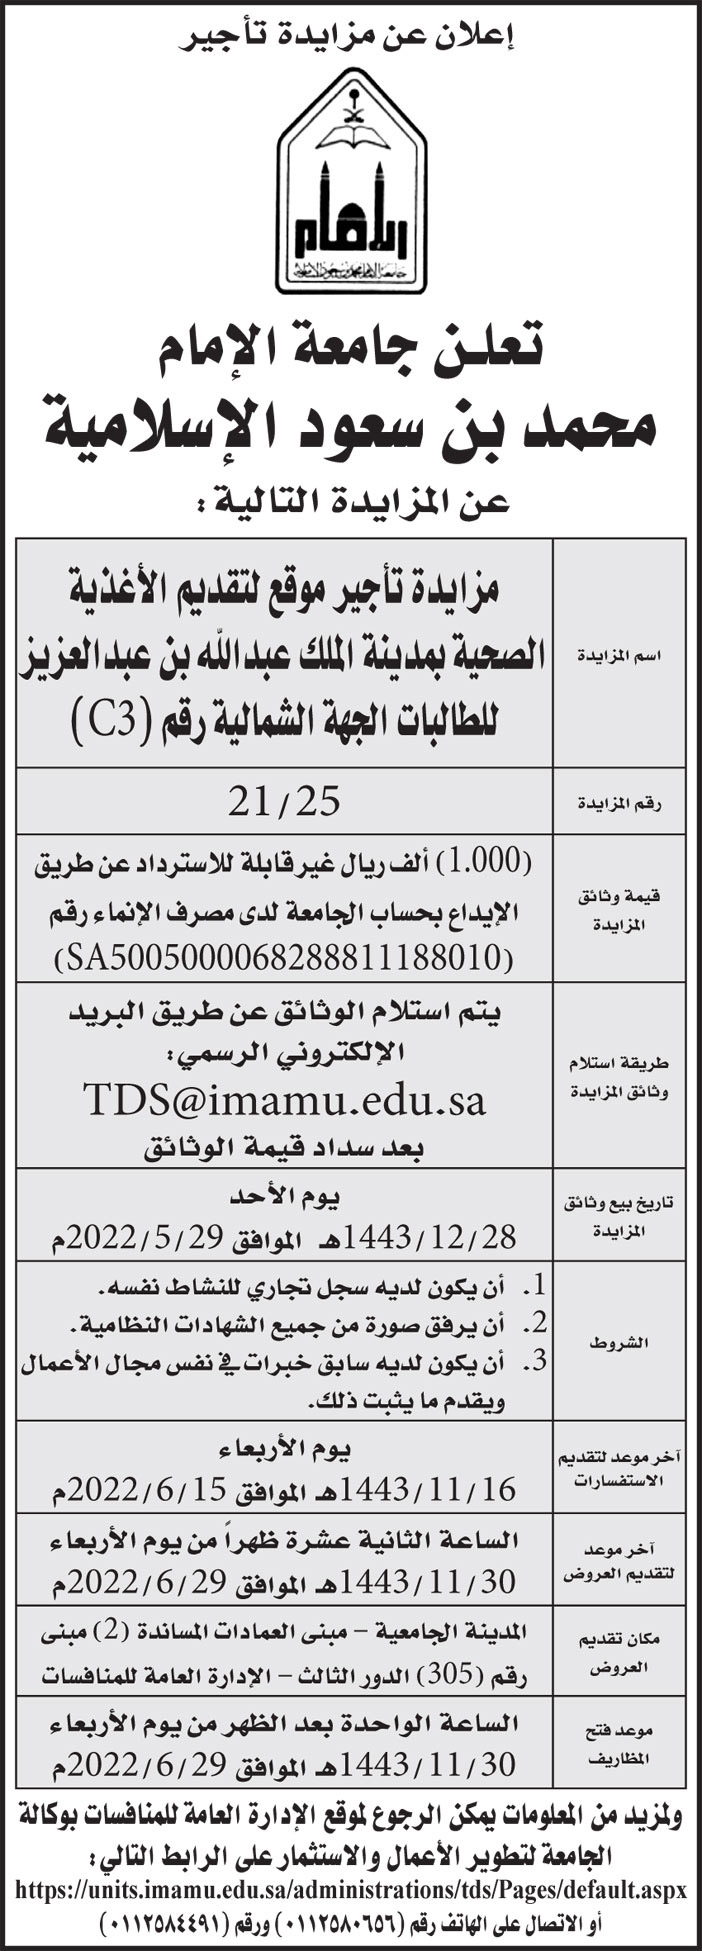 جامعة الإمام محمد بن سعود الإسلامية تطرح مزايدة تأجير موقع لتقديم الأغذية الصحية بمدينة الملك عبدالله بن عبدالعزيز للطالبات الجهة الشمالية رقم (C3) 